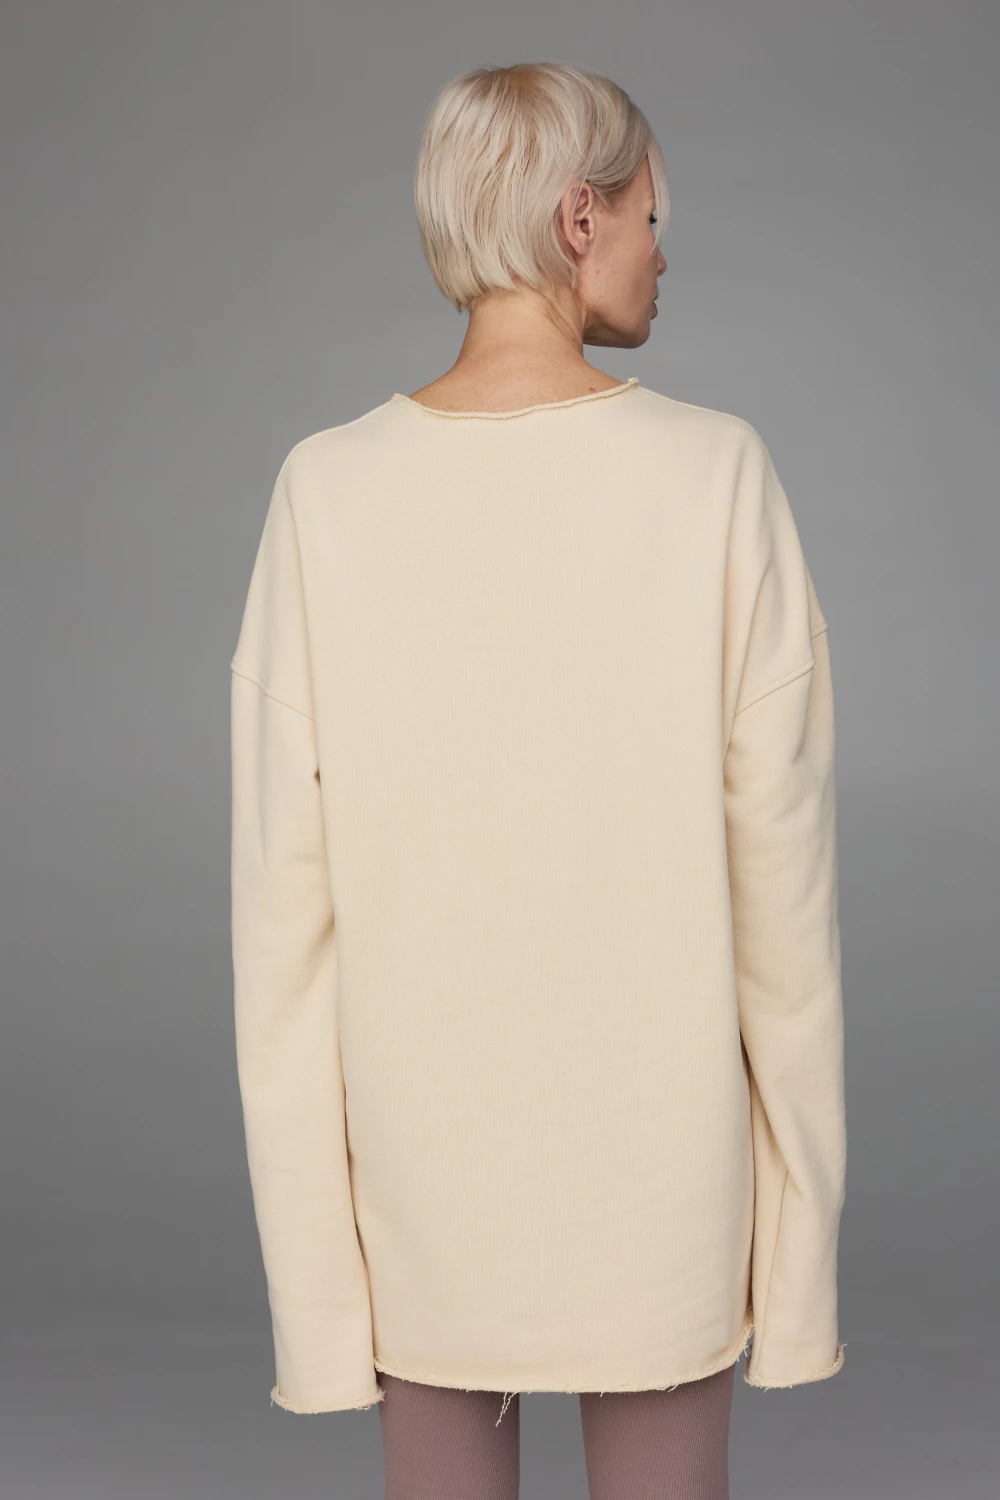 sweatshirt "relax fit" in vanilla color